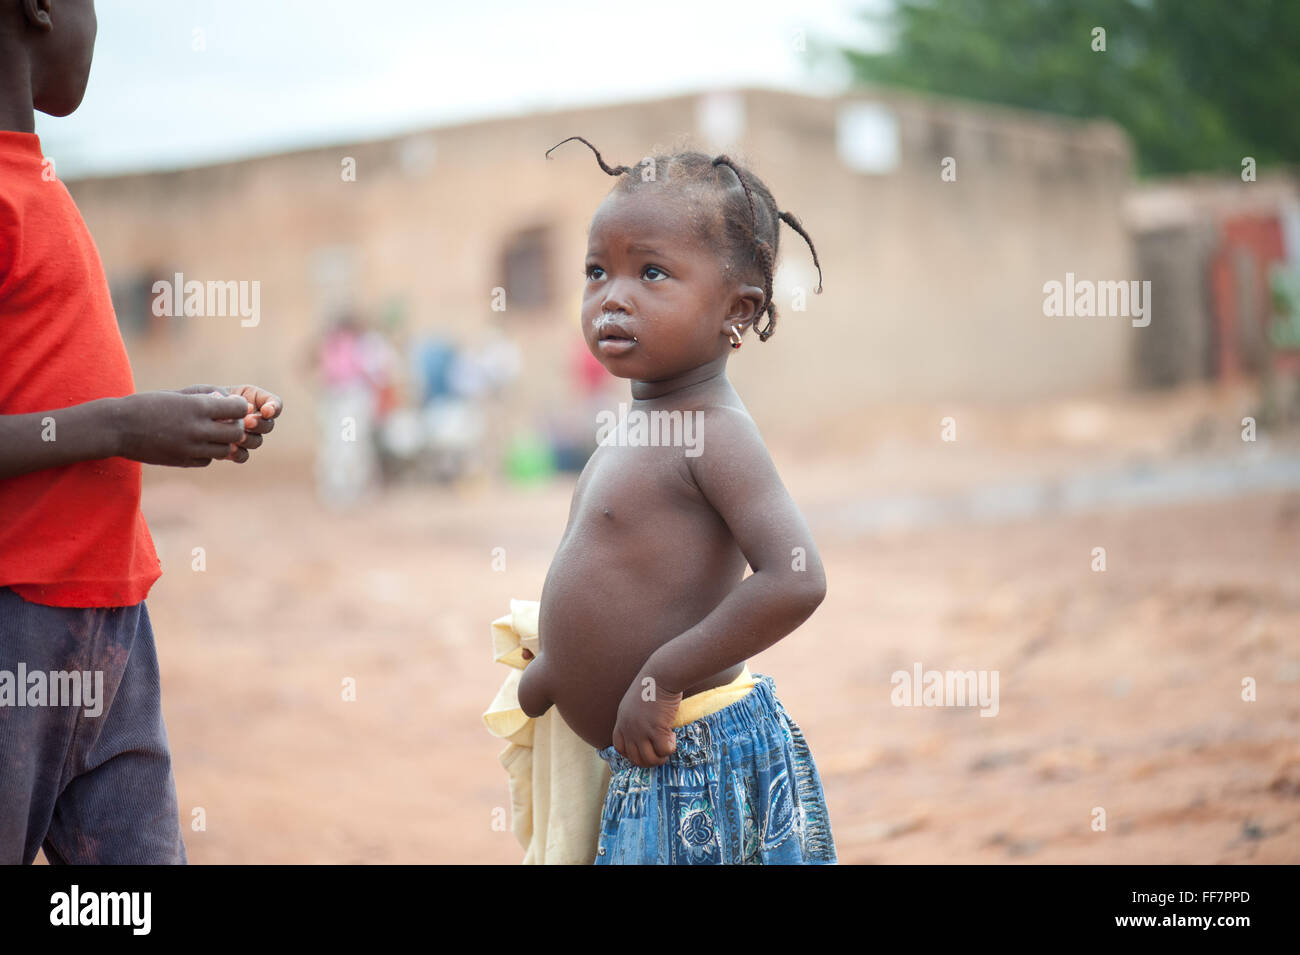 Mali, Afrika - junge Mädchen sein Bruder gerade in Afrika Stockfoto